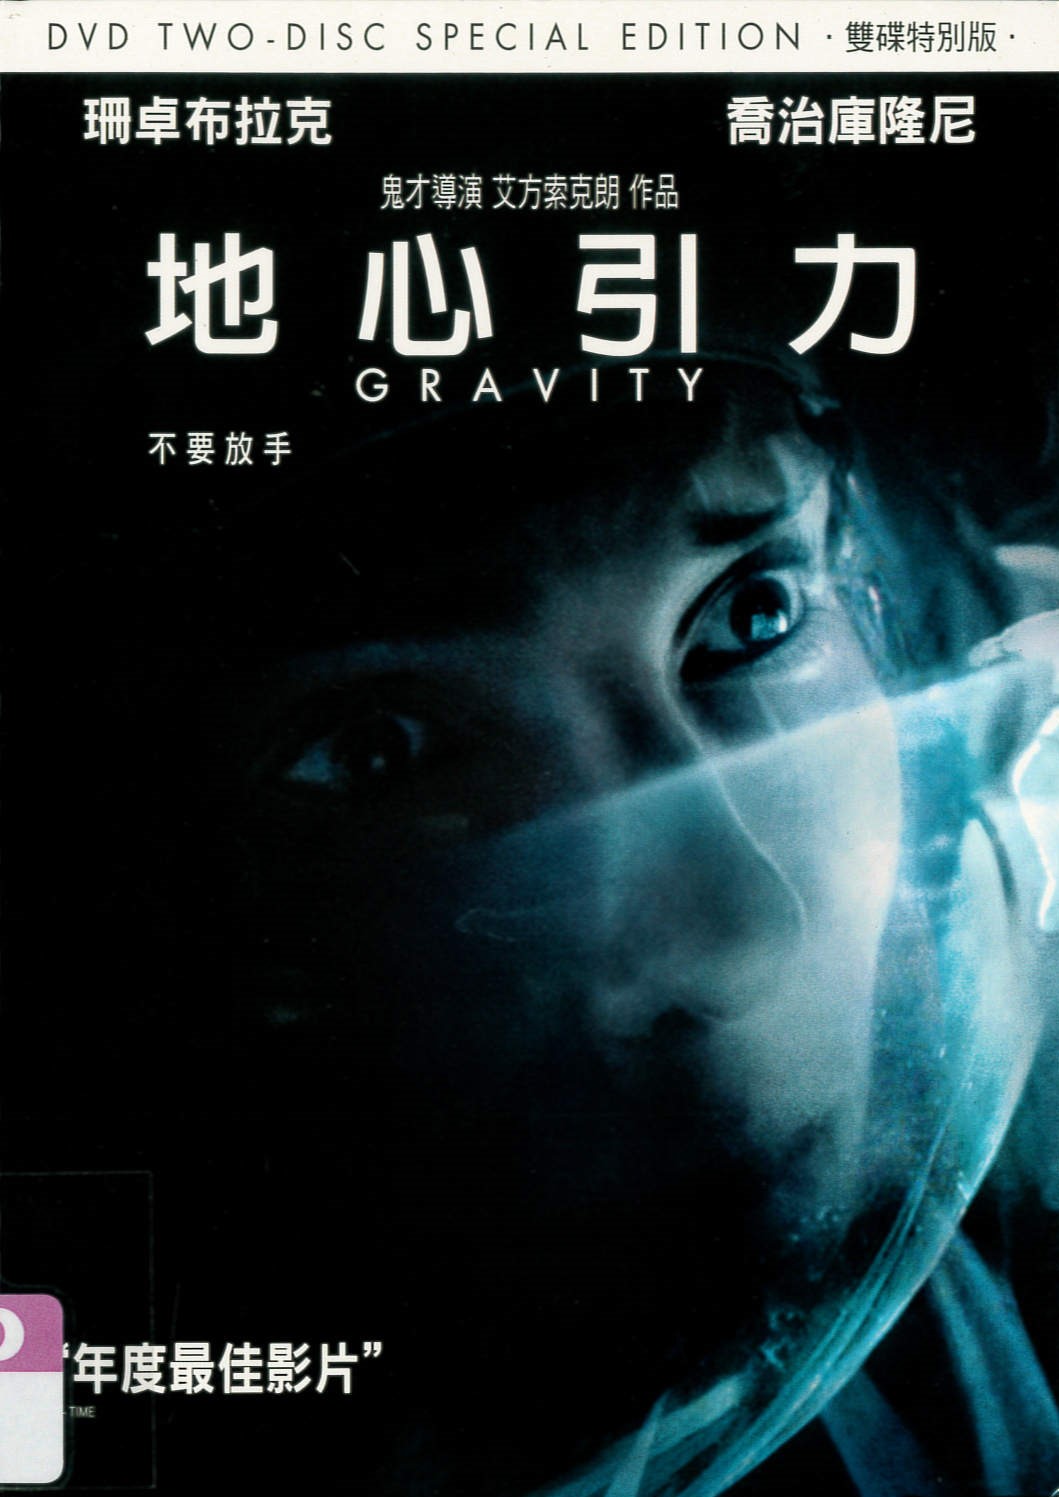 地心引力[保護級:劇情] Gravity /